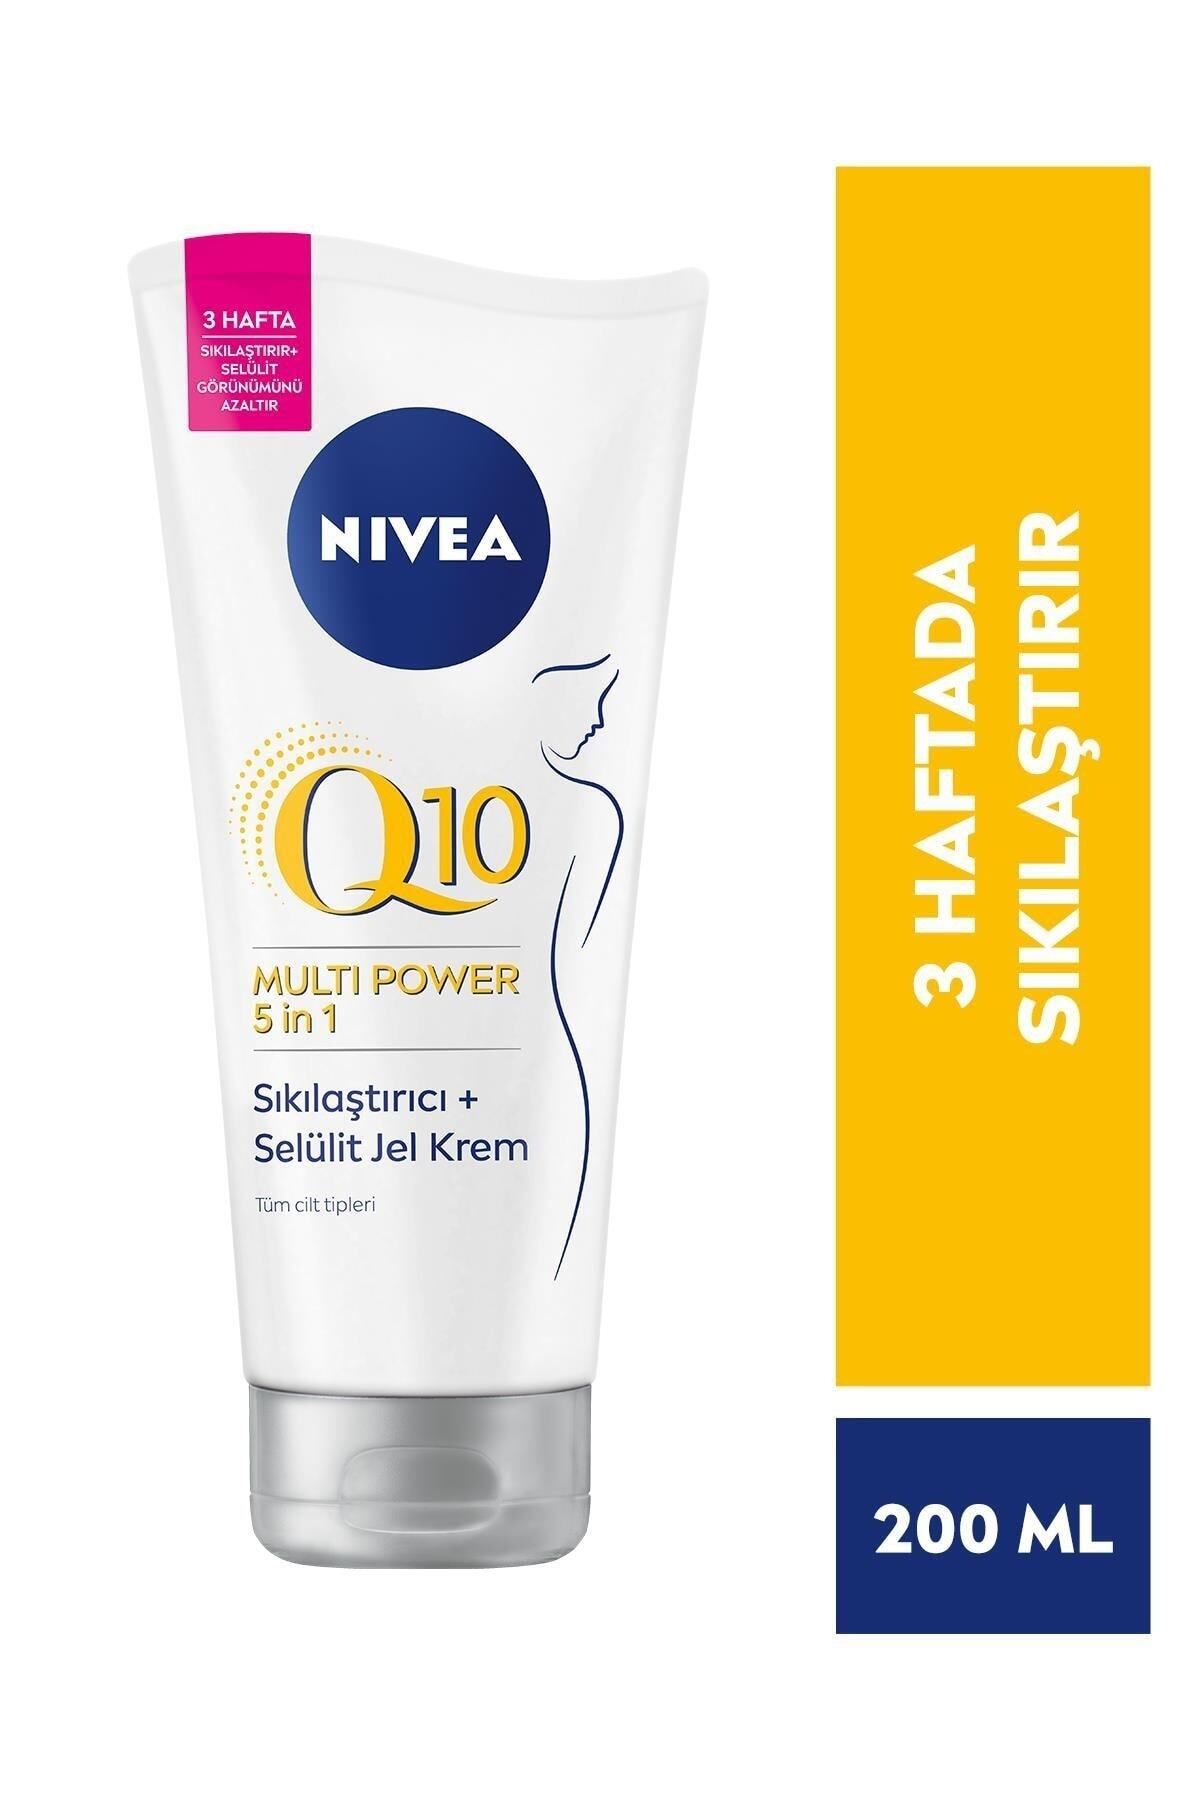 NIVEA 2 Haftada Selülit görünümünü zzaltmaya ve cildinizi sıkılaştırmaya yardımcı krem 200ml